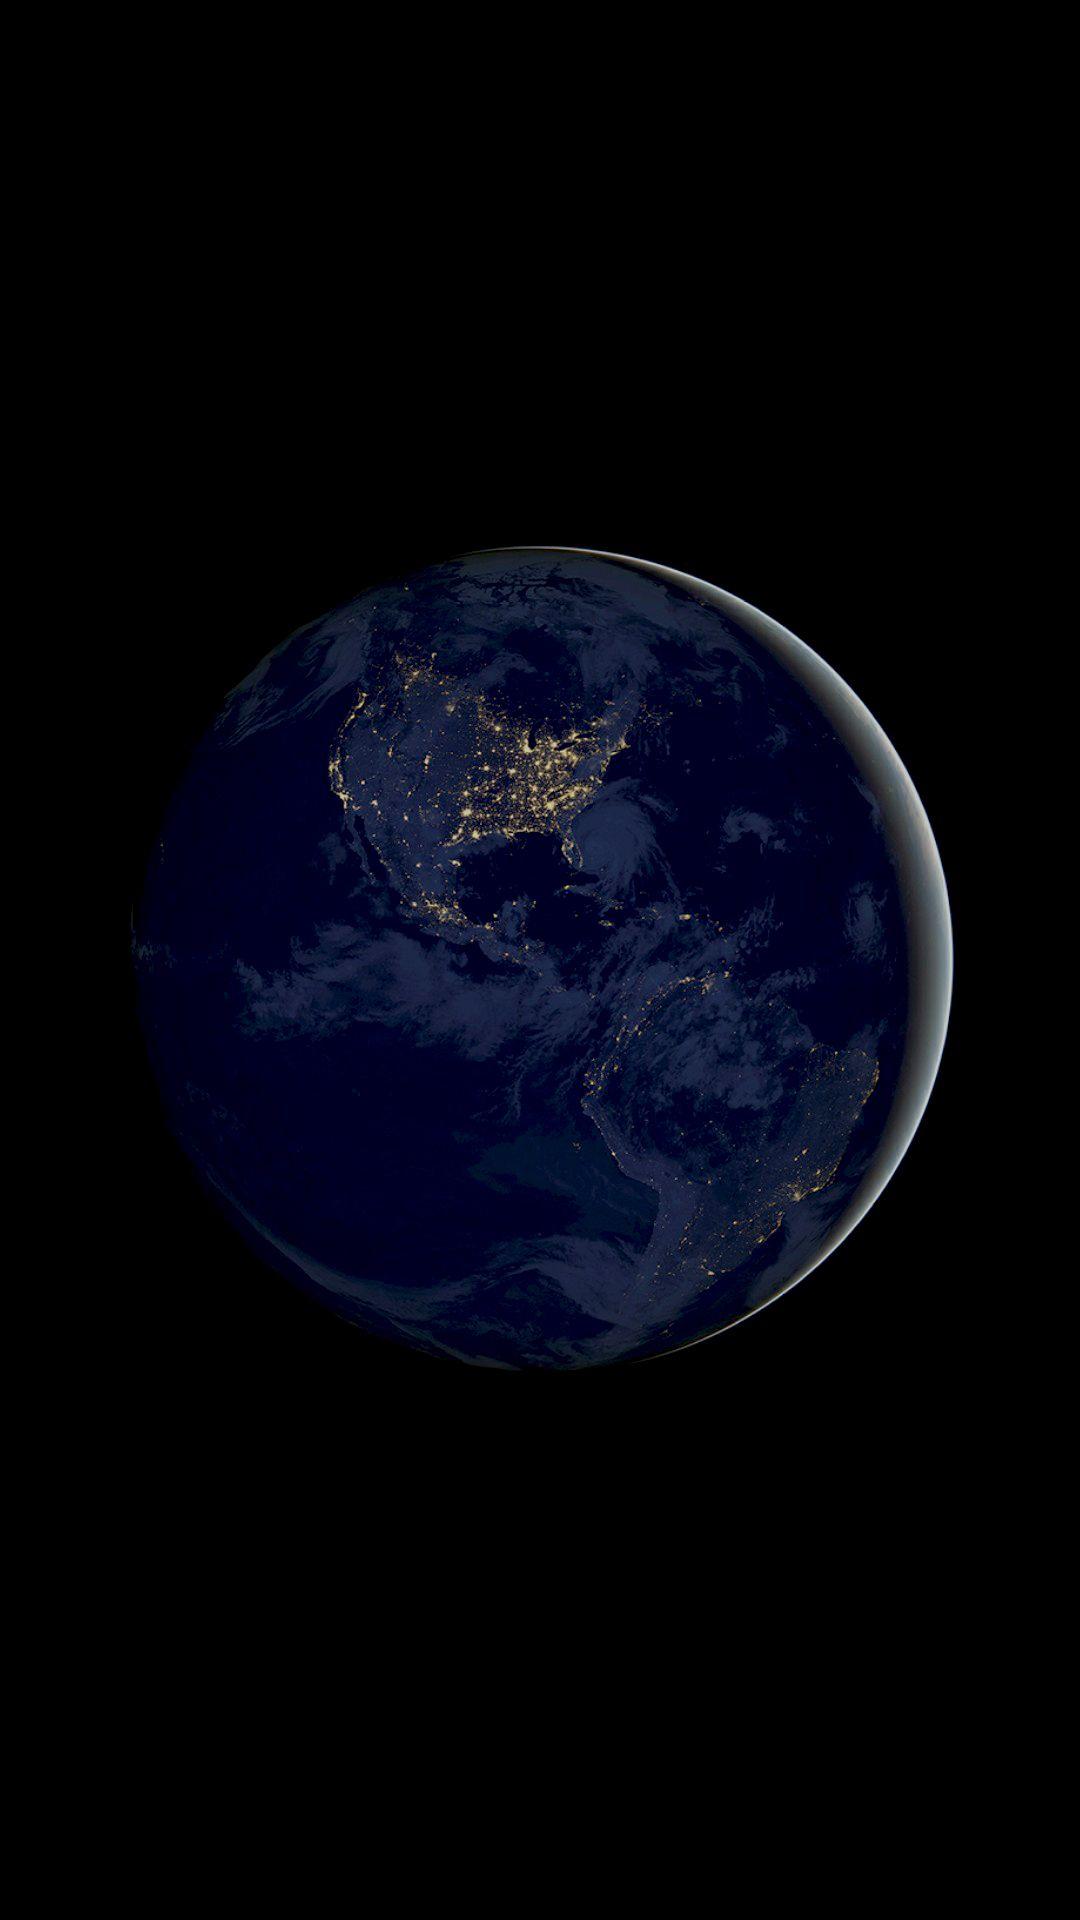 Earth Planet 4K AMOLED Wallpaper. Обои для iphone, Обои андроид, Обои фоны